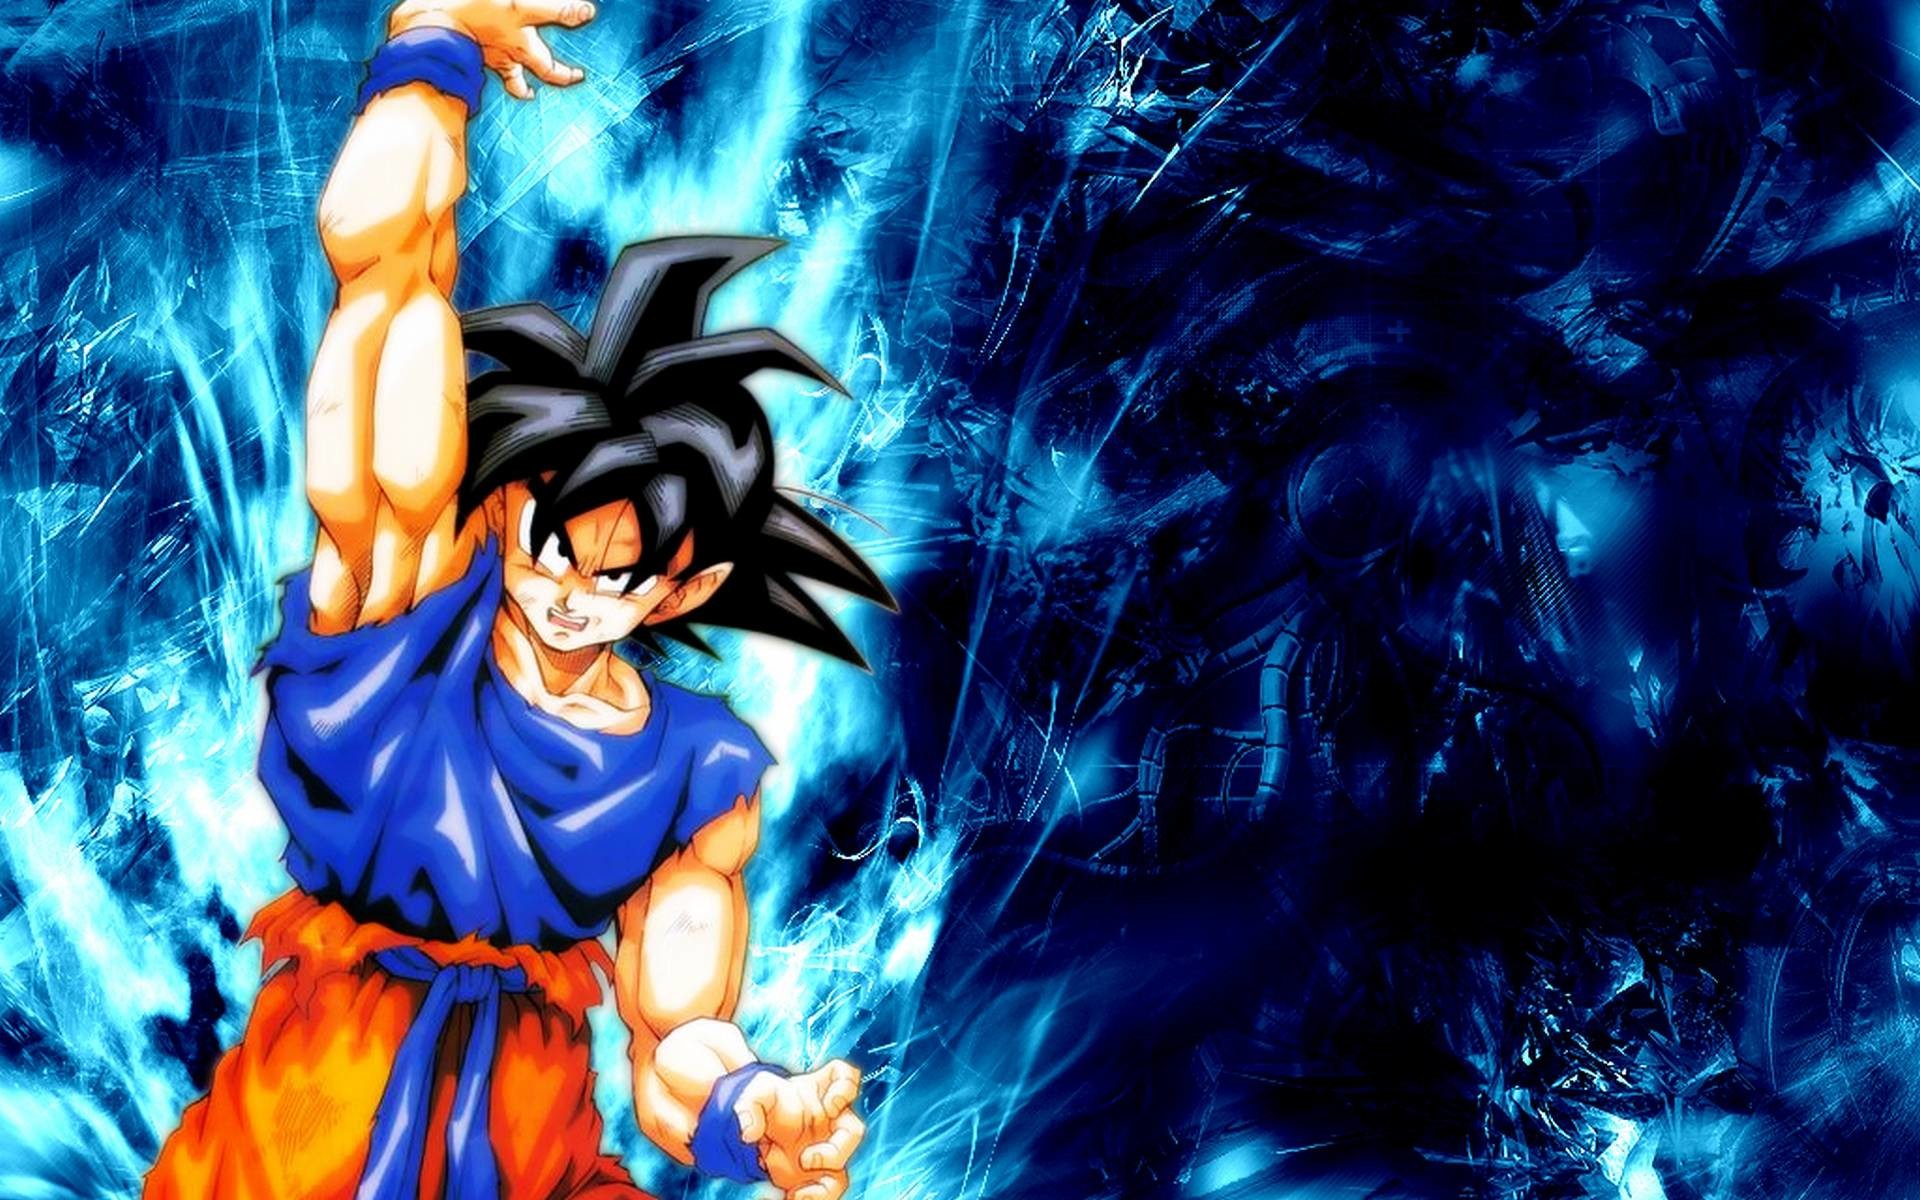 Son Goku: Son Goku là một nhân vật quen thuộc trong loạt truyện tranh nổi tiếng Dragon Ball và Dragon Ball Super. Với khả năng chiến đấu vượt trội, tấm lòng trung hậu và tinh thần đồng đội cao, Goku là nhân vật được hàng triệu fan yêu thích. Hãy xem những hình ảnh đáng yêu của cậu bé Son Goku tại đây để tìm hiểu thêm về nhân vật này.